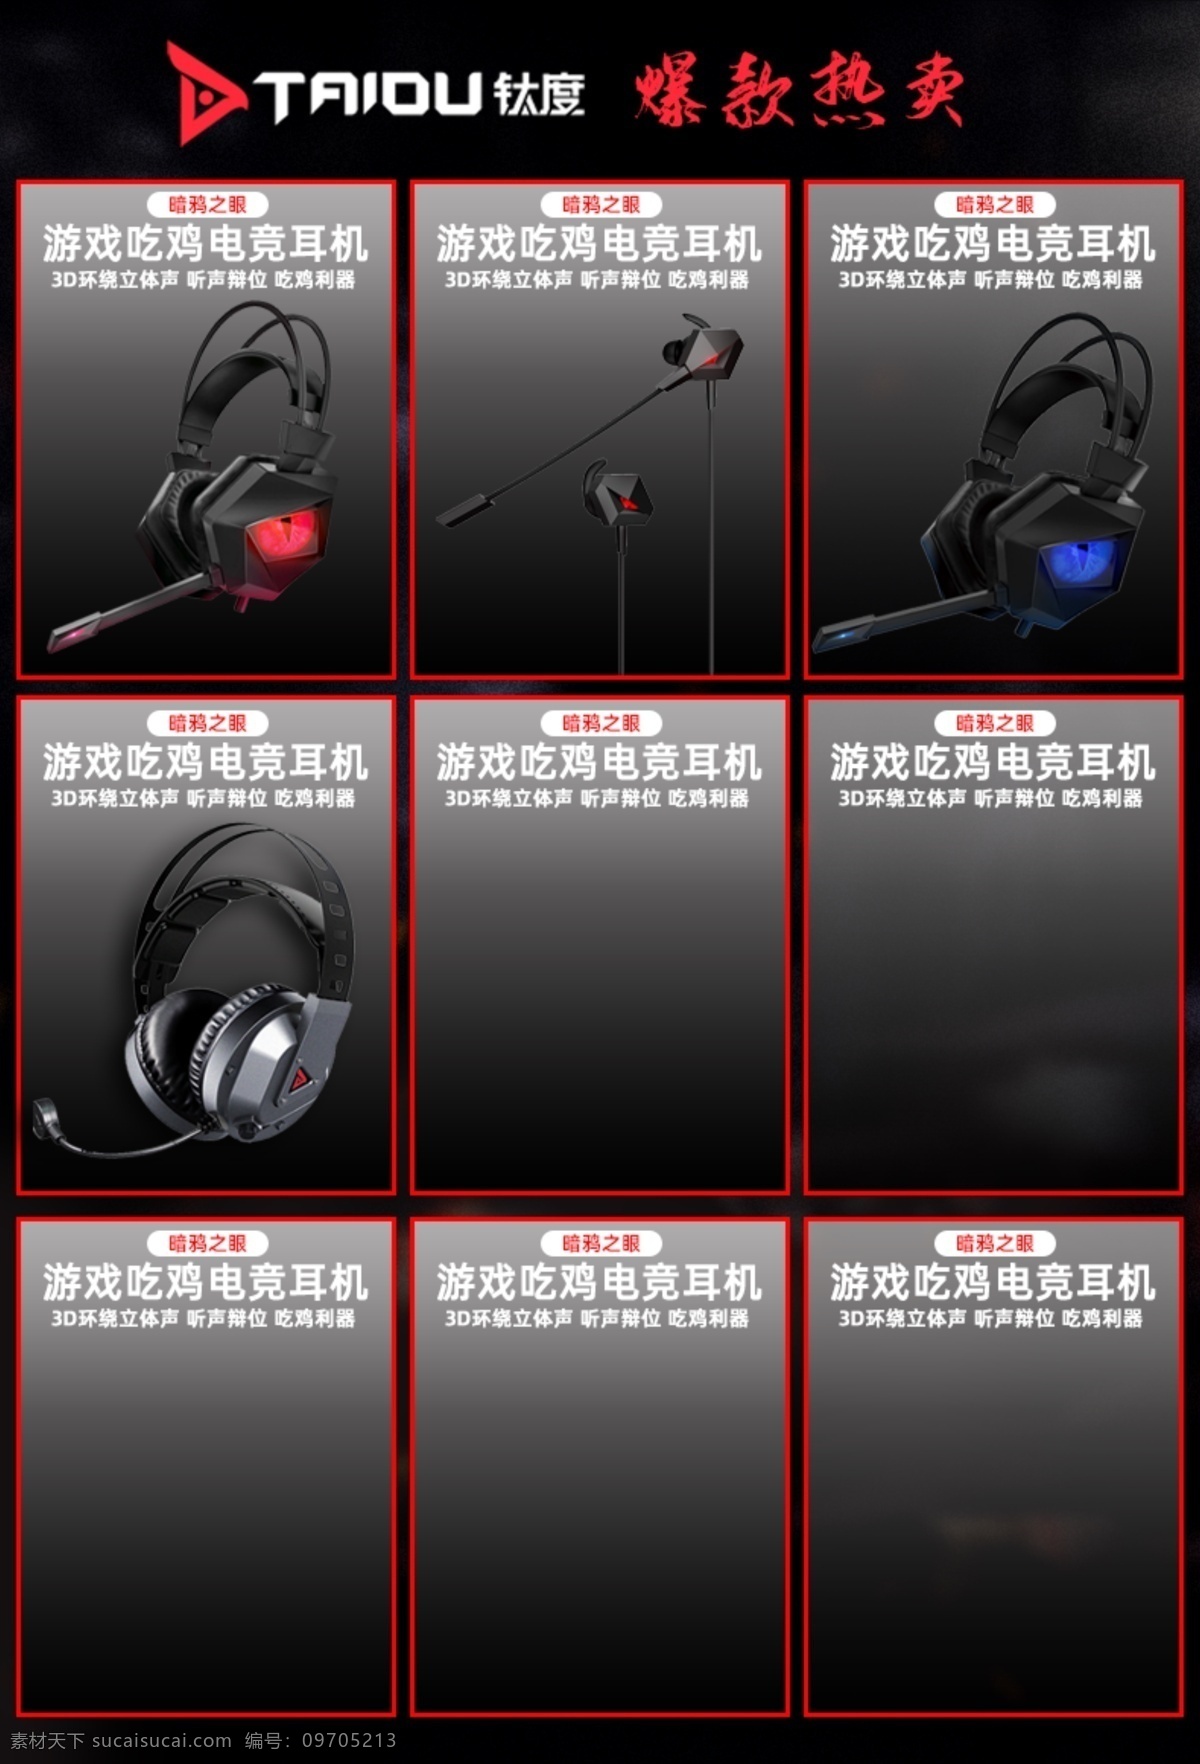 产品九宫格 电竞外设 钛度产品 产品边框 精品外设 产品介绍 耳机